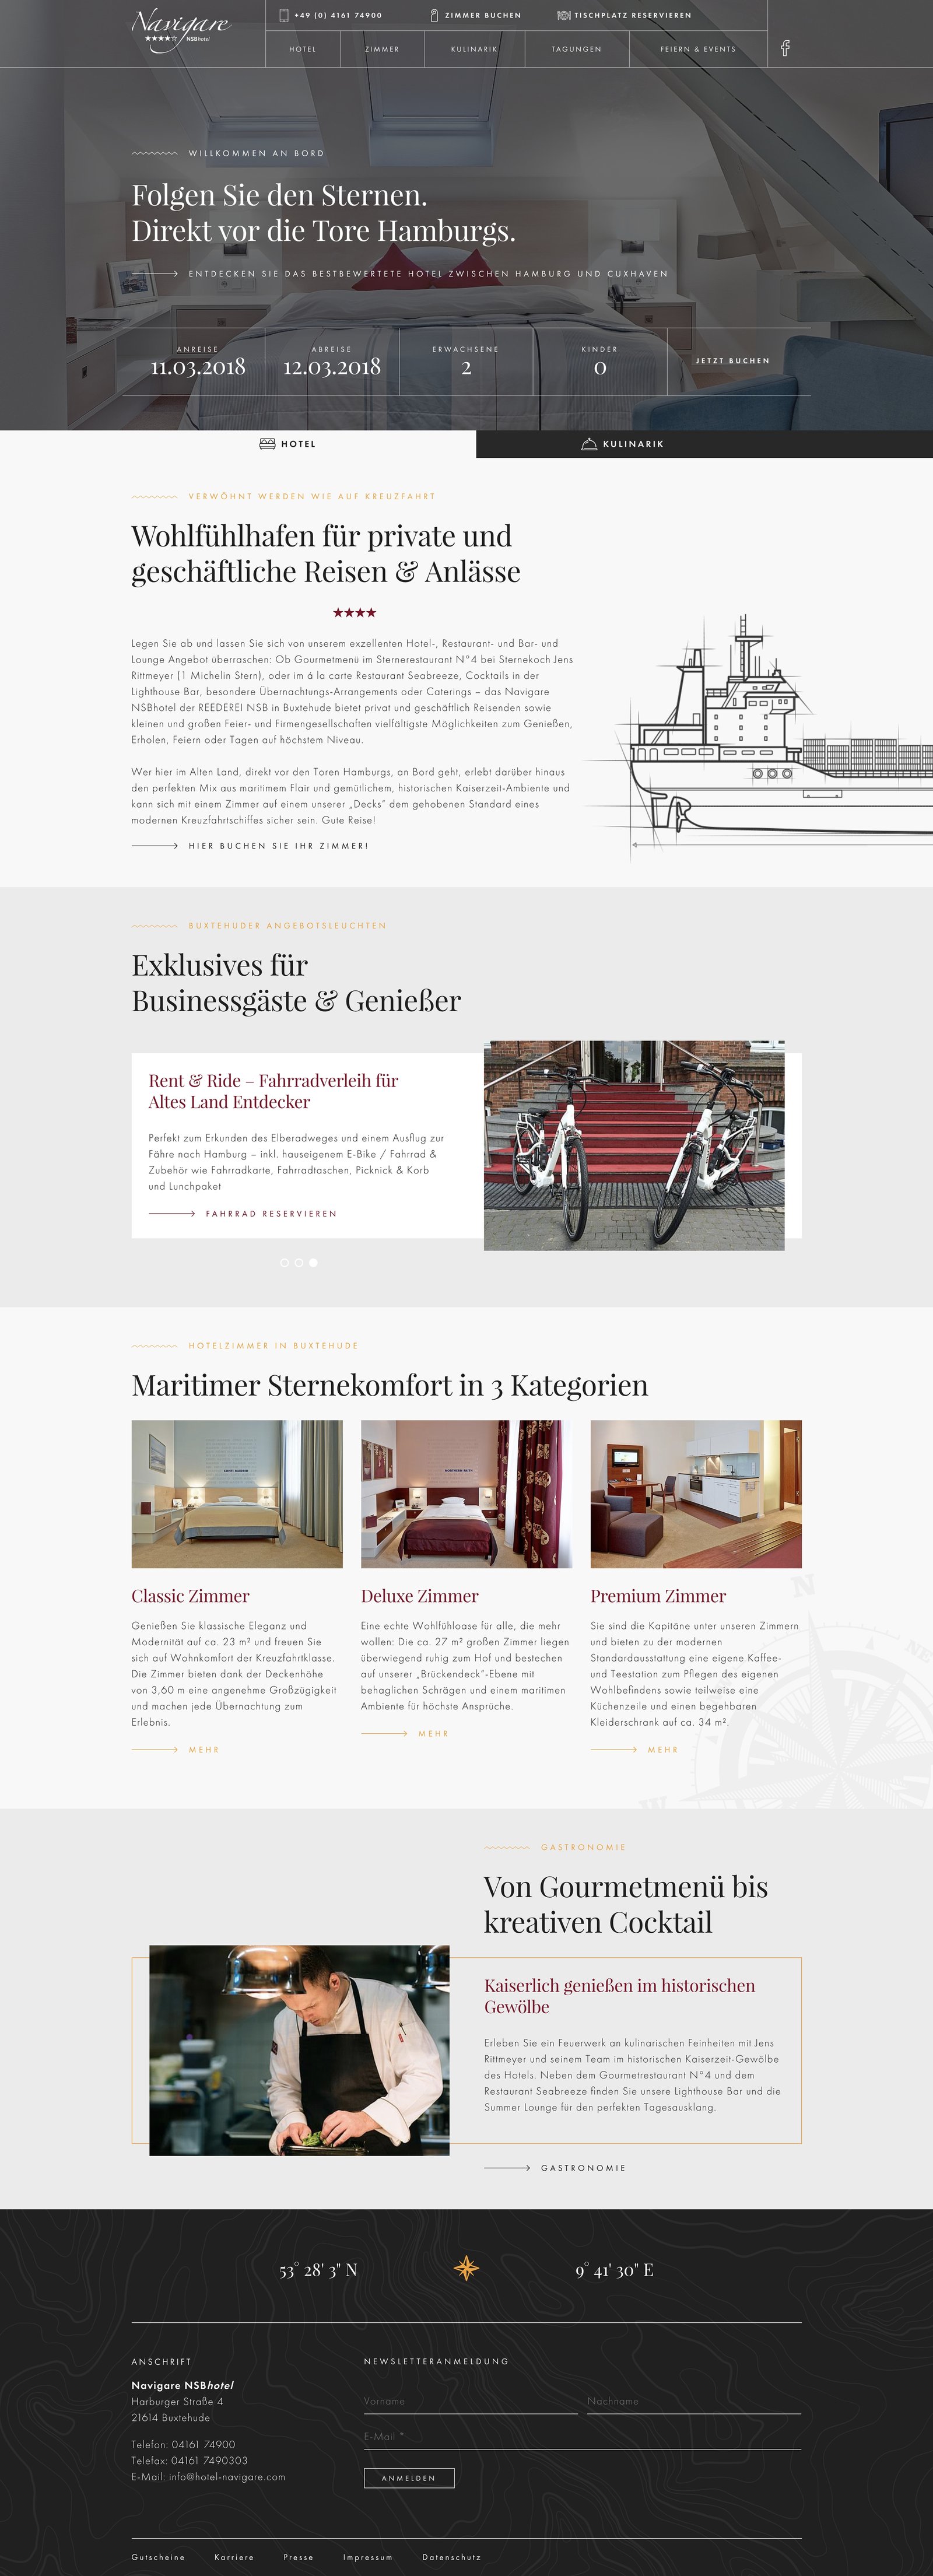 Website auf der Startseite mit zwei Reitern für den zwei Bereiche mit Hotel und Gastronomie und Jens Rittmeyer